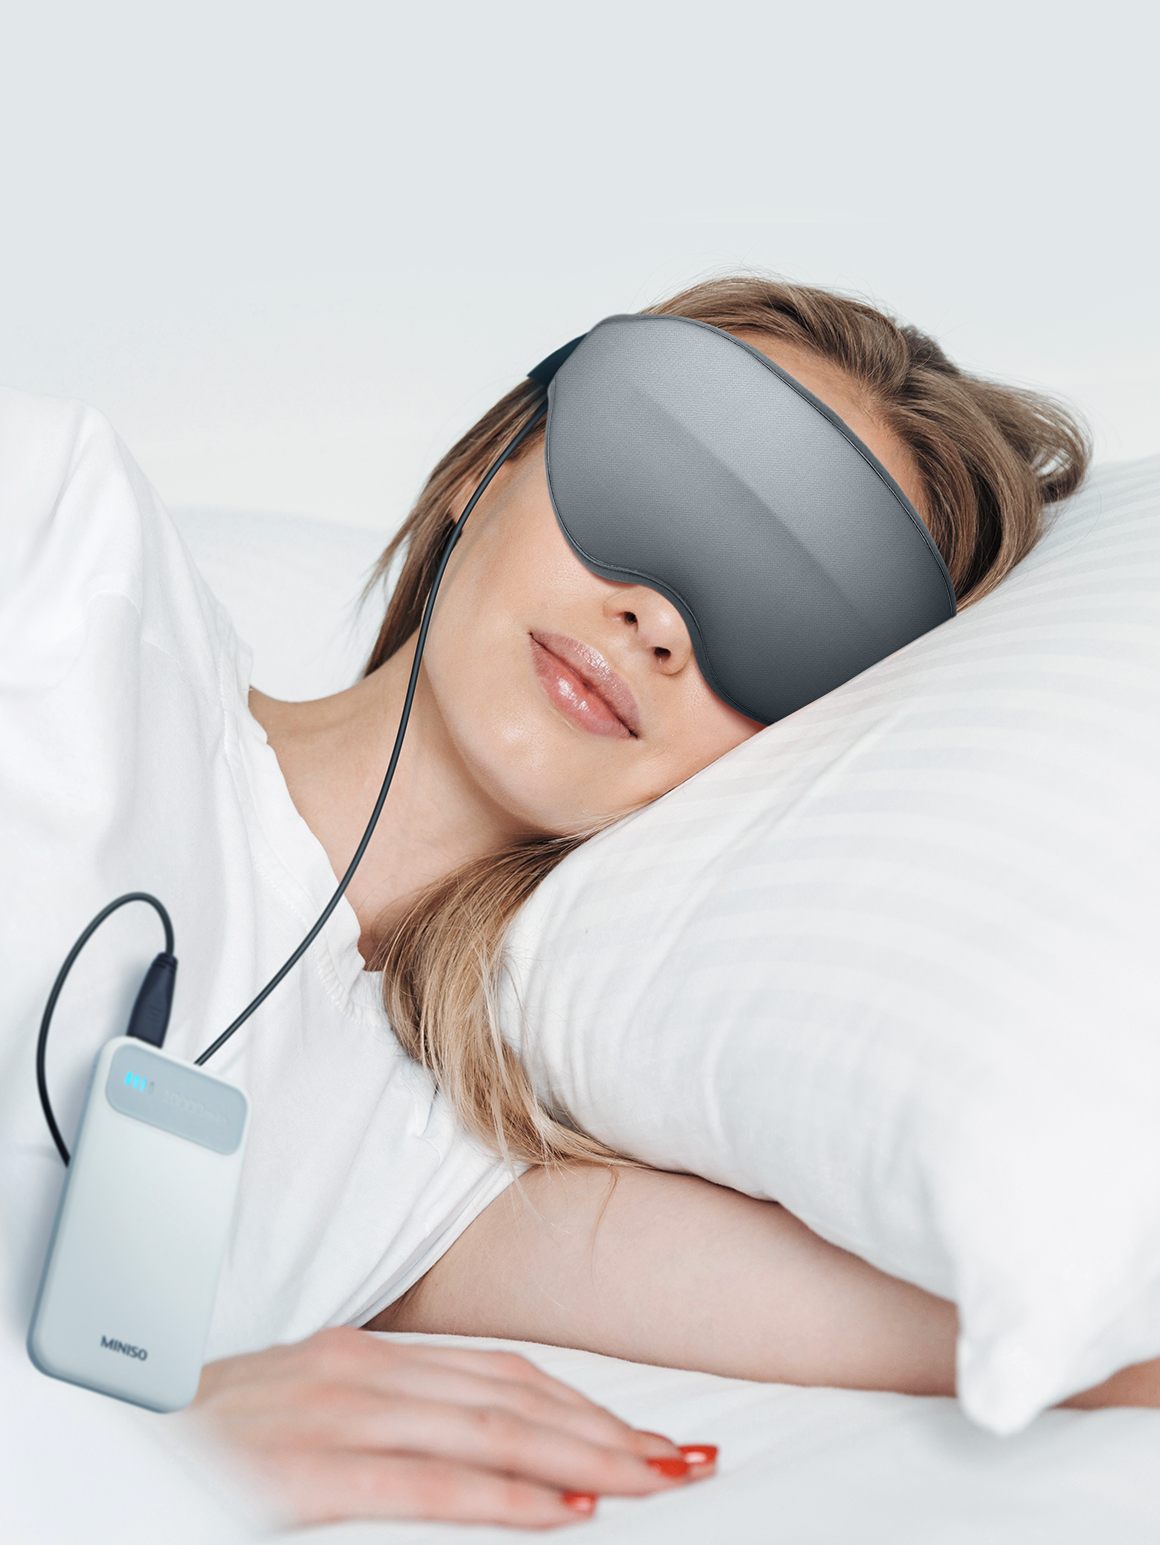 超舒適3D眼窩睡眠眼罩DreamlightHeat熱敷眼罩消除疲勞助你安眠 (8.3折)